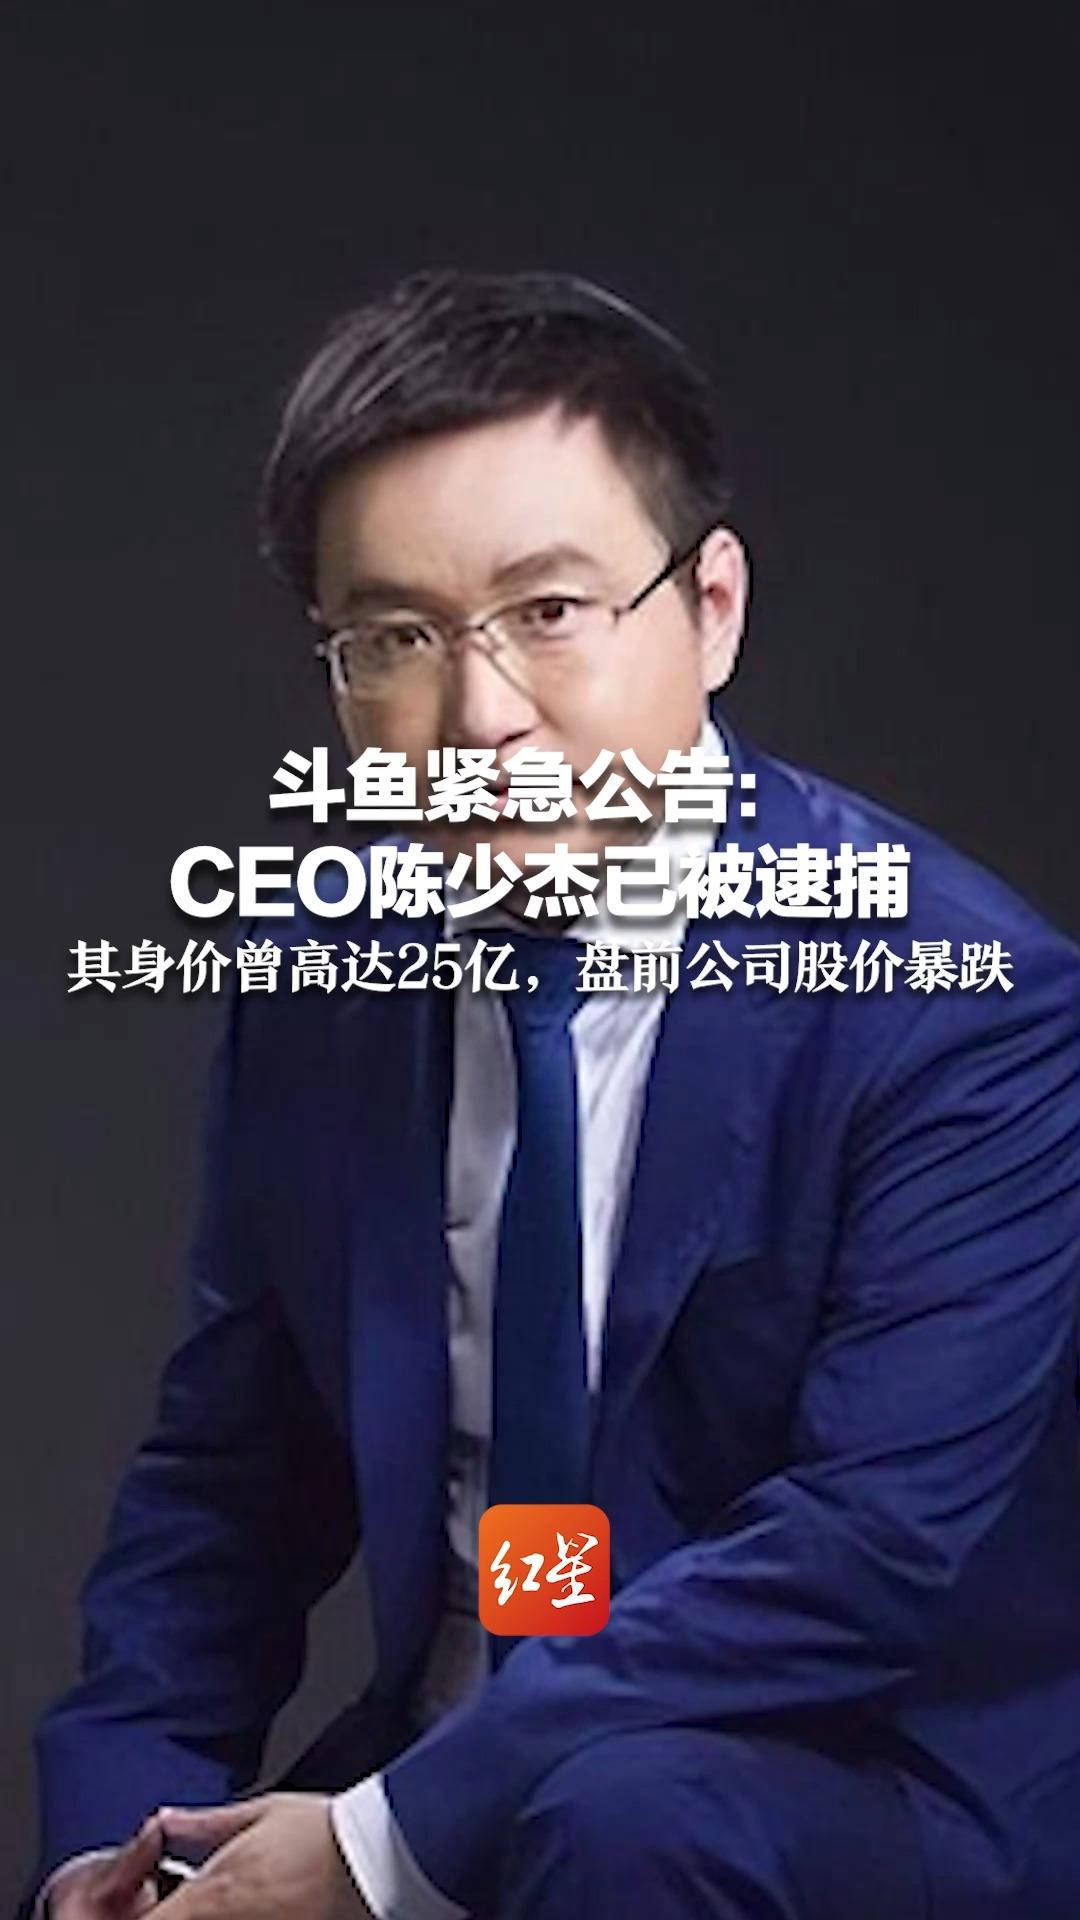 斗鱼紧急公告：CEO陈少杰已被逮捕 ，其身价曾高达25亿，盘前公司股价暴跌